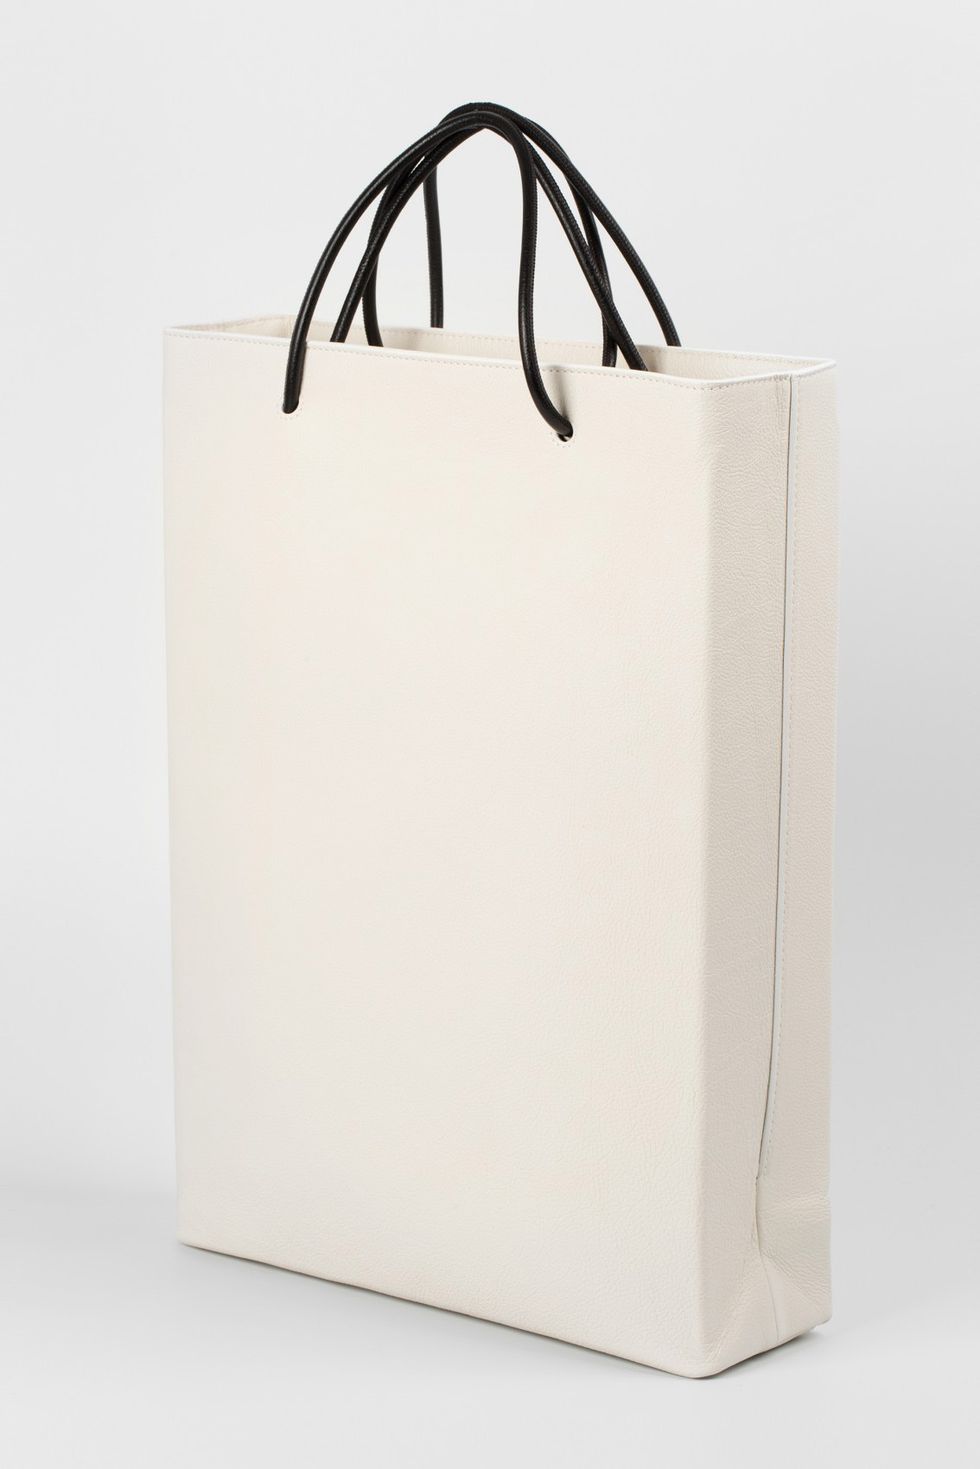 Shopping bag, Paper bag, Tote bag, 